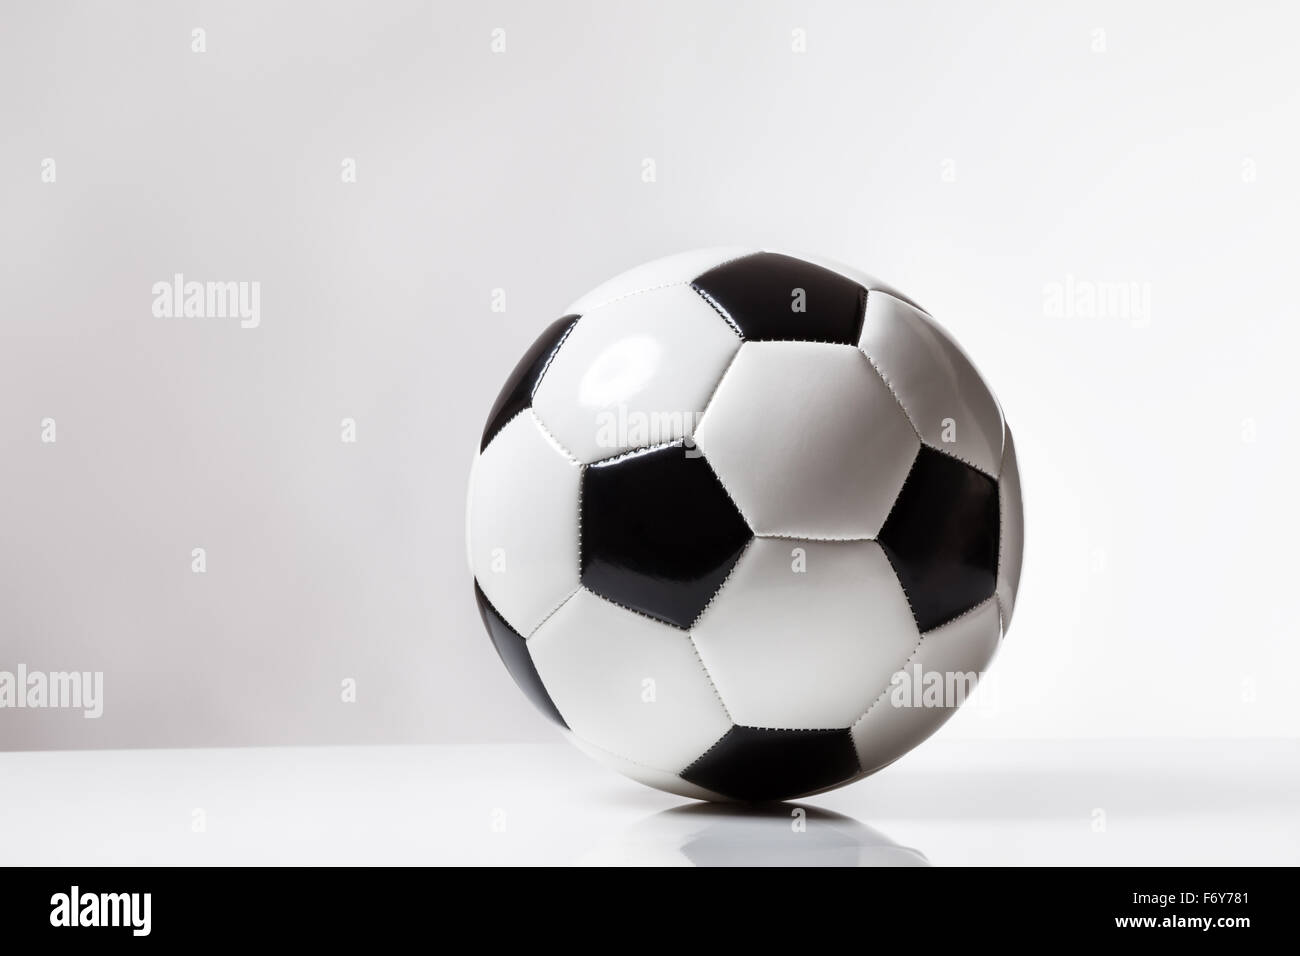 Stillleben-Bild von einem traditionellen schwarzen und weißen Fußball Stockfoto